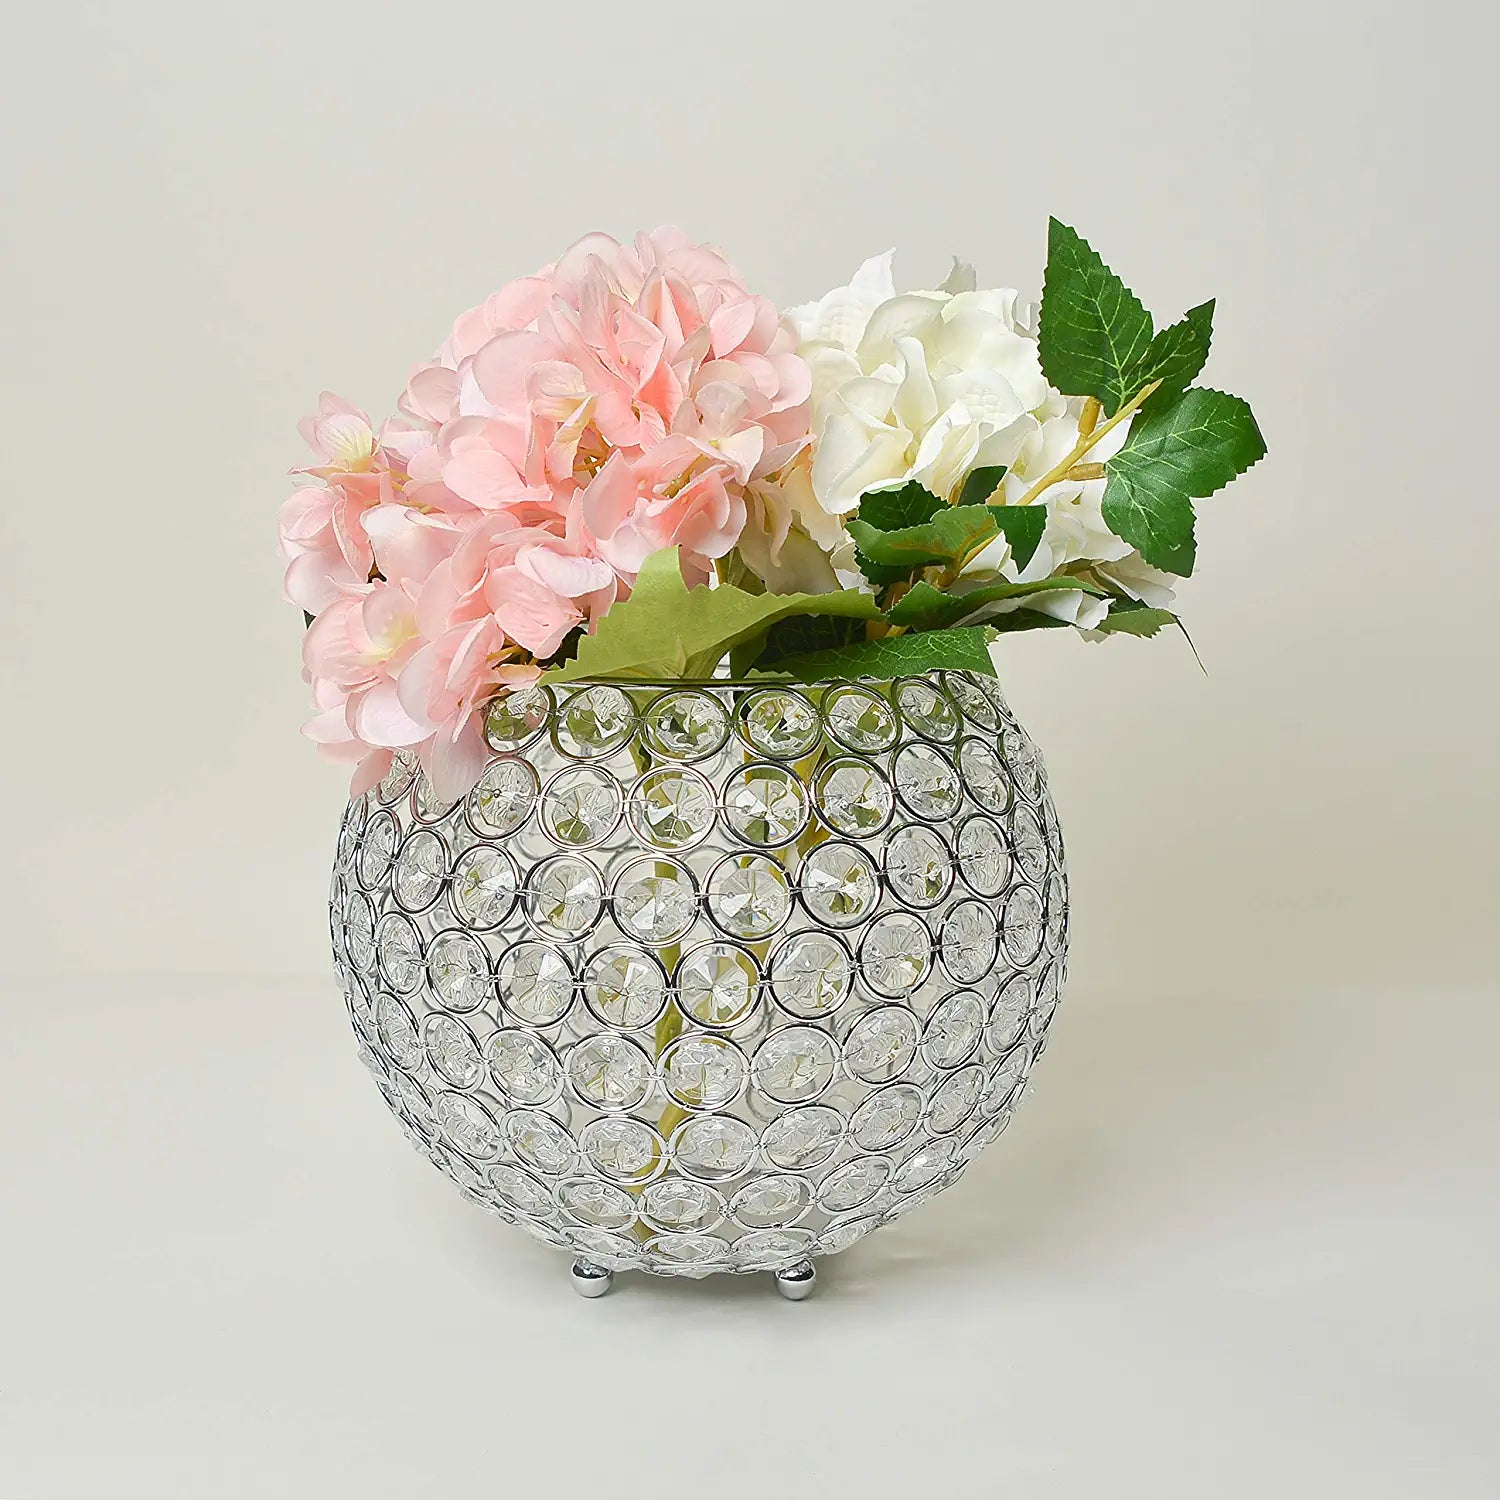 Elegant Designs Elipse Crystal Circular Bowl Candle Holder, Flower Vase, Wedding Centerpiece, Favor, 7 Inch, Chrome